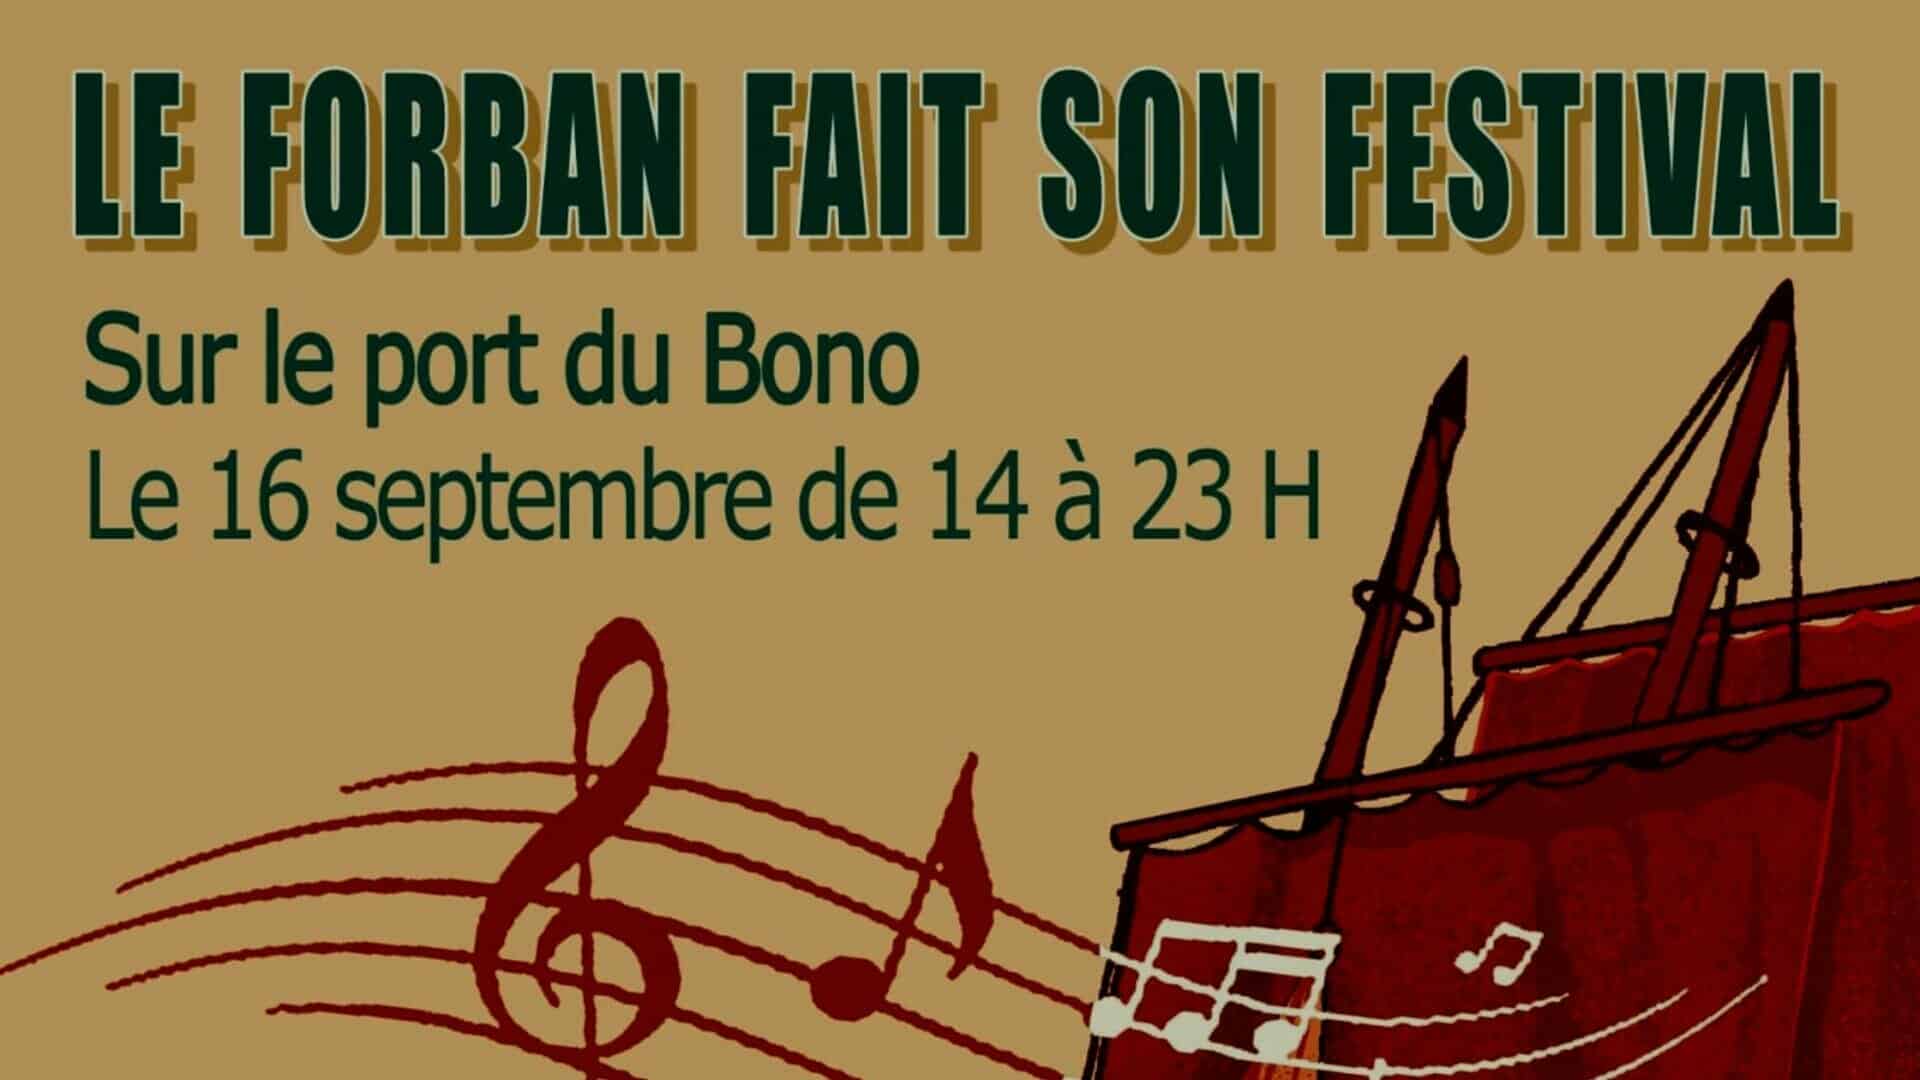 Le Forban fait son festival, 16 septembre 2023 au Bono